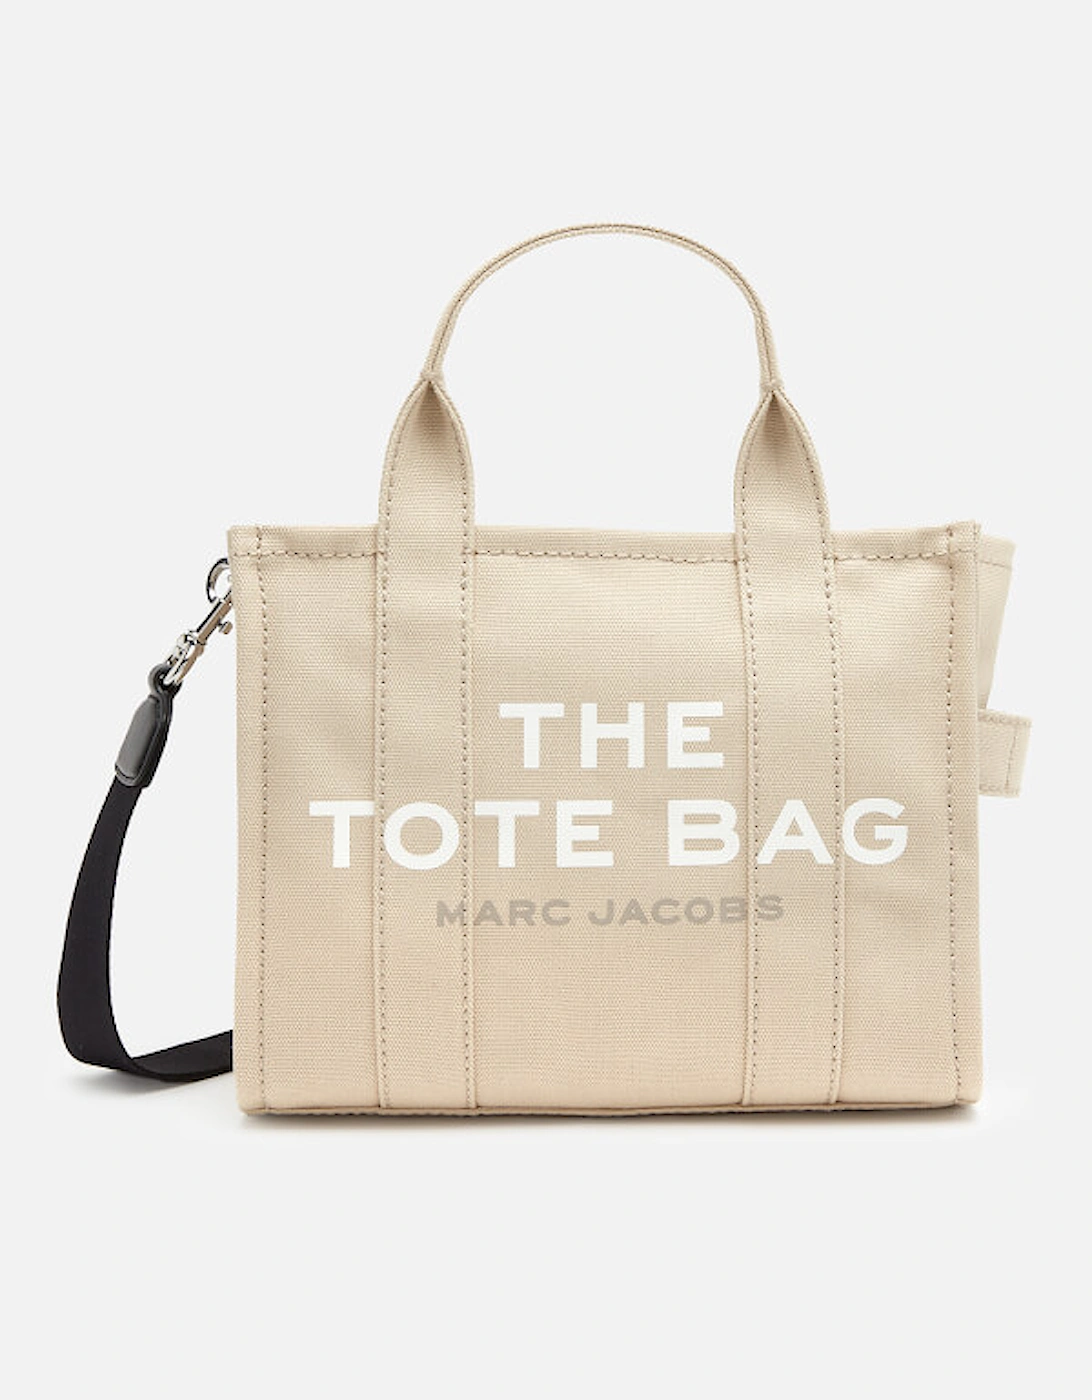 Home - Designer Handbags for Women - Designer Tote Bags - The Mini Color Tote Bag - - The Mini Color Tote Bag, 2 of 1